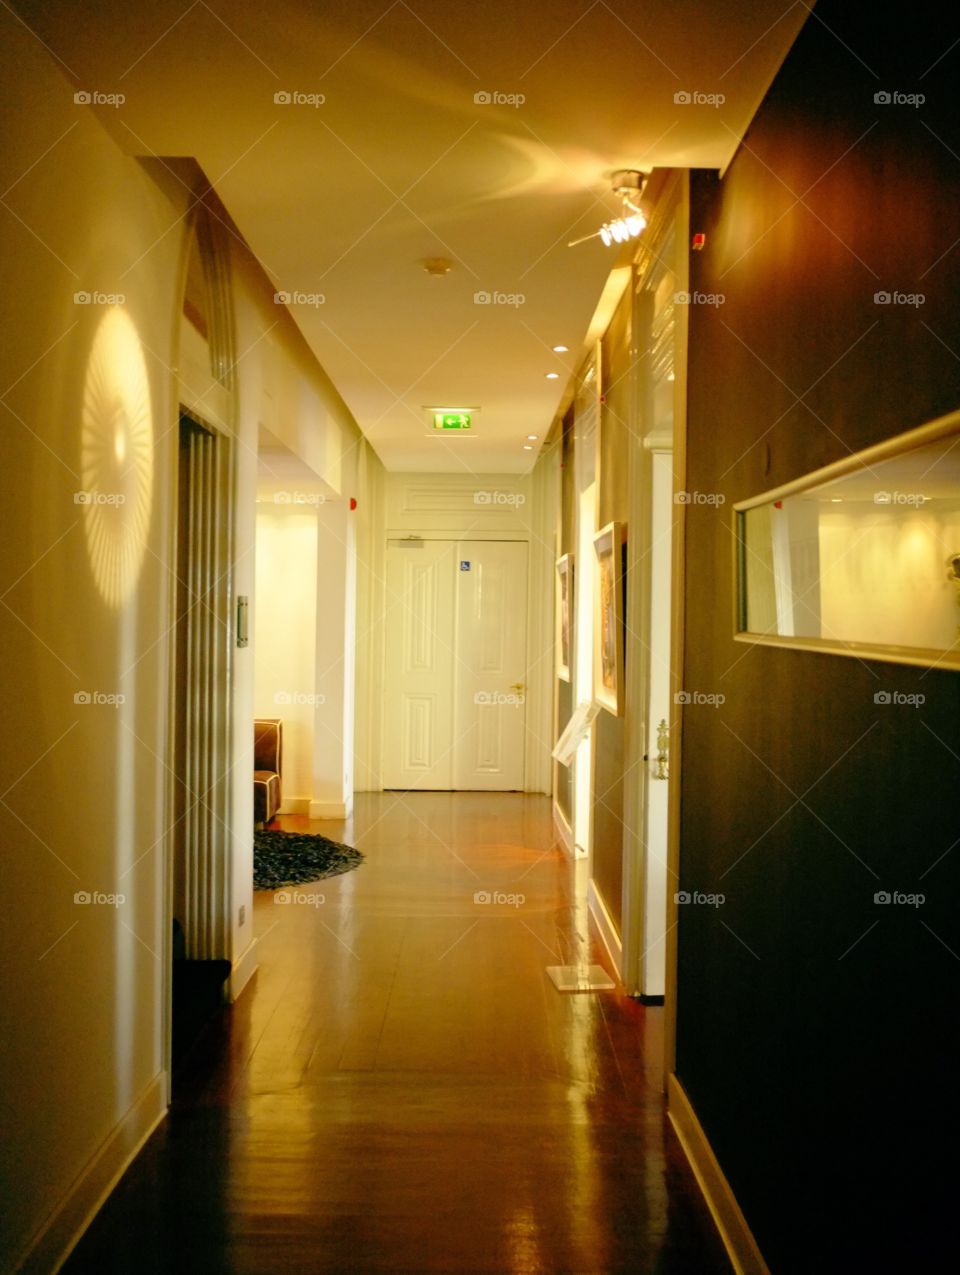 Indoors, Hallway, Inside, Window, Door